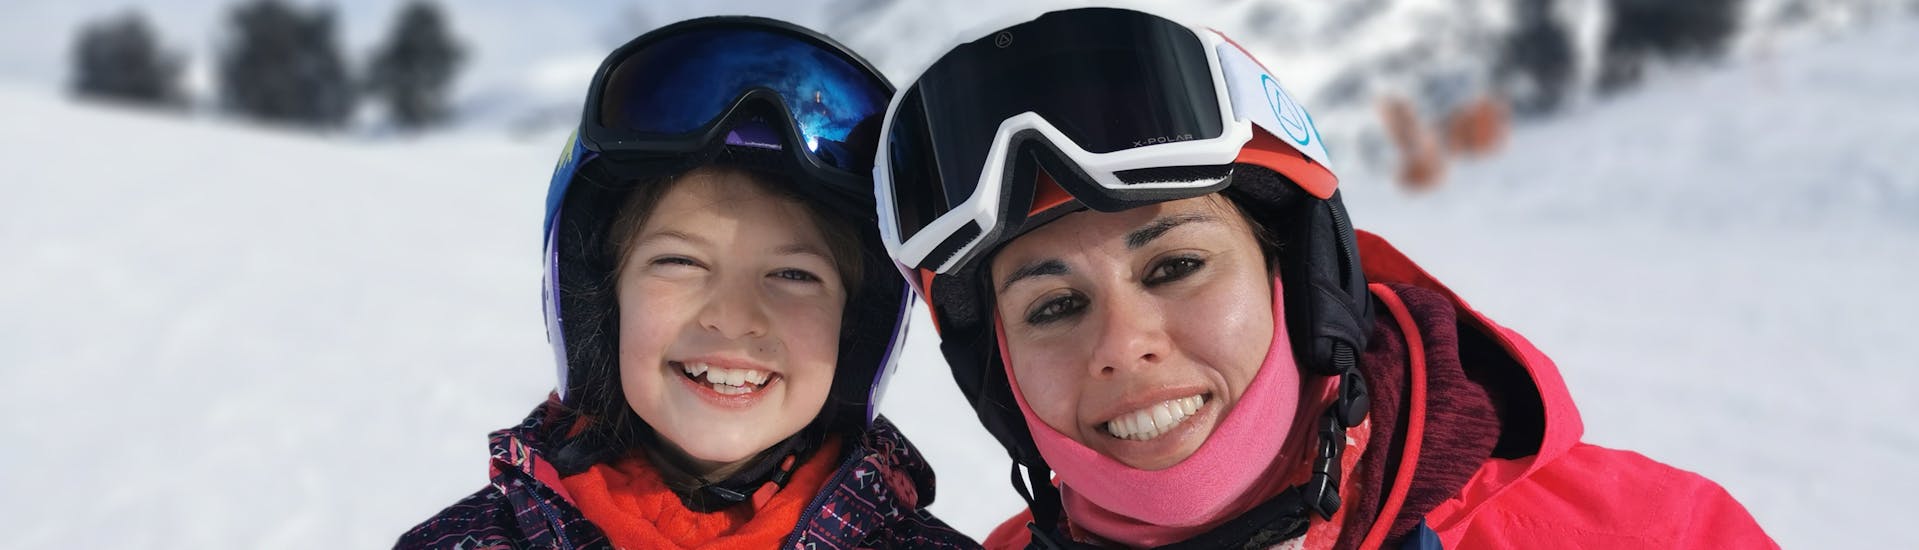 Clases de snowboard para niños (4-16 años) de todos los niveles - Medio día con Ski Life Escuela de Esquí Baqueira.